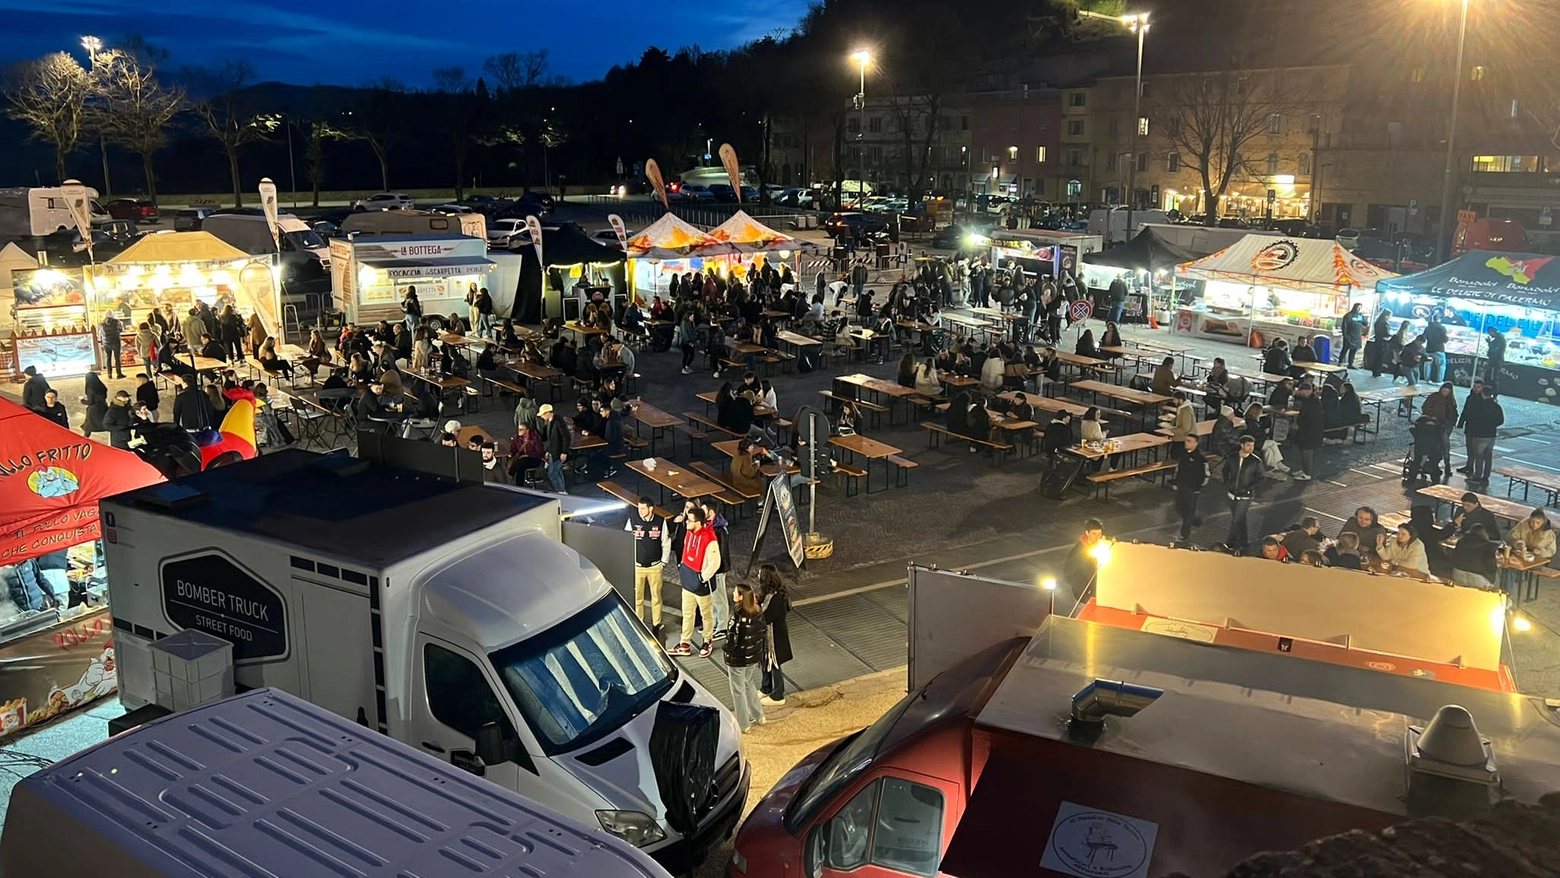 Domenica sera all’apertura dello street food di Urbino a Borgo Mercatale 